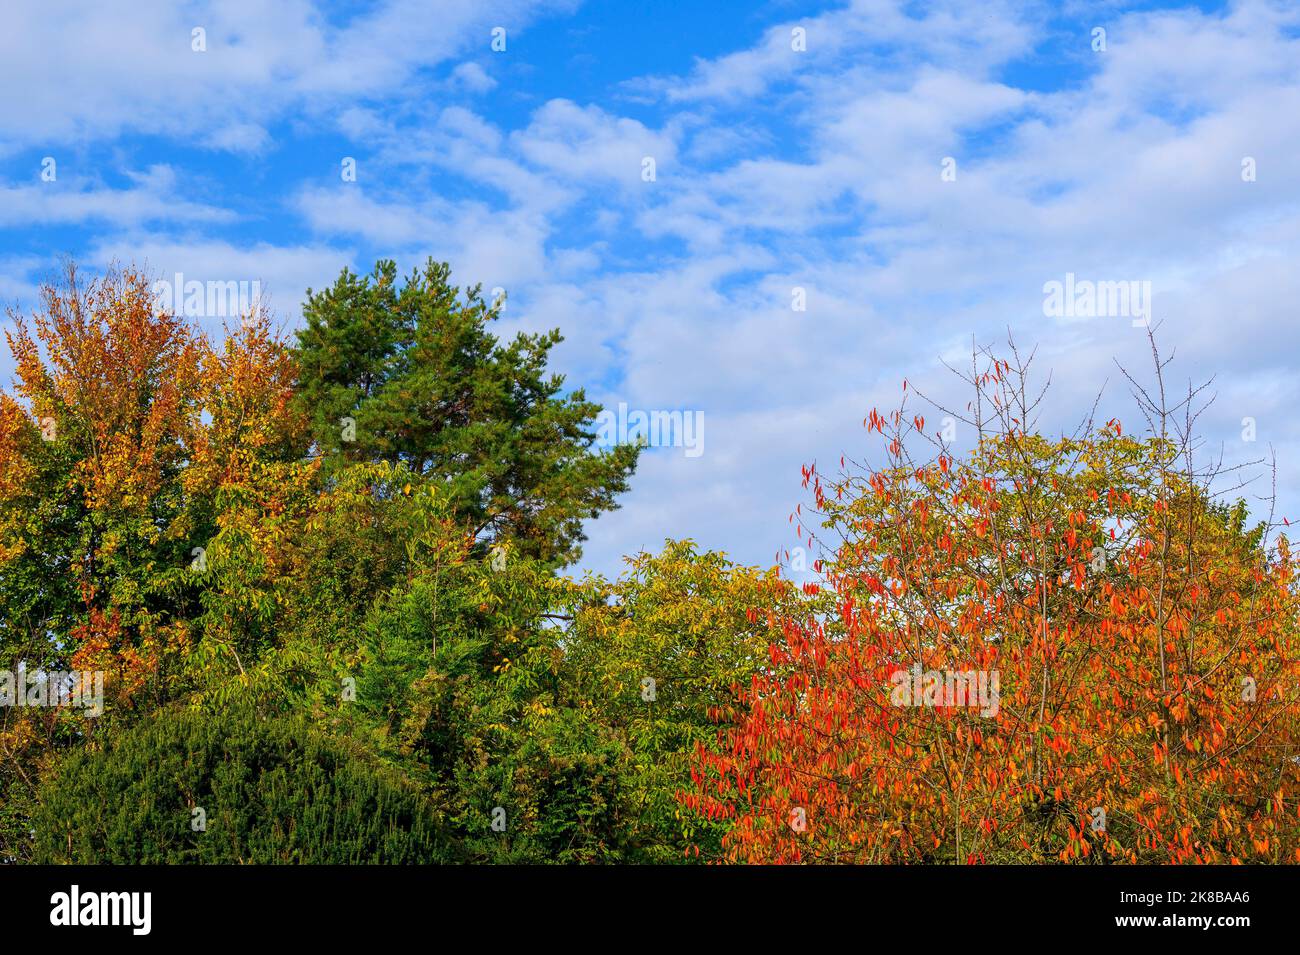 Alberi con foglie d'autunno dai colori vivaci illuminate dal sole. Foto Stock